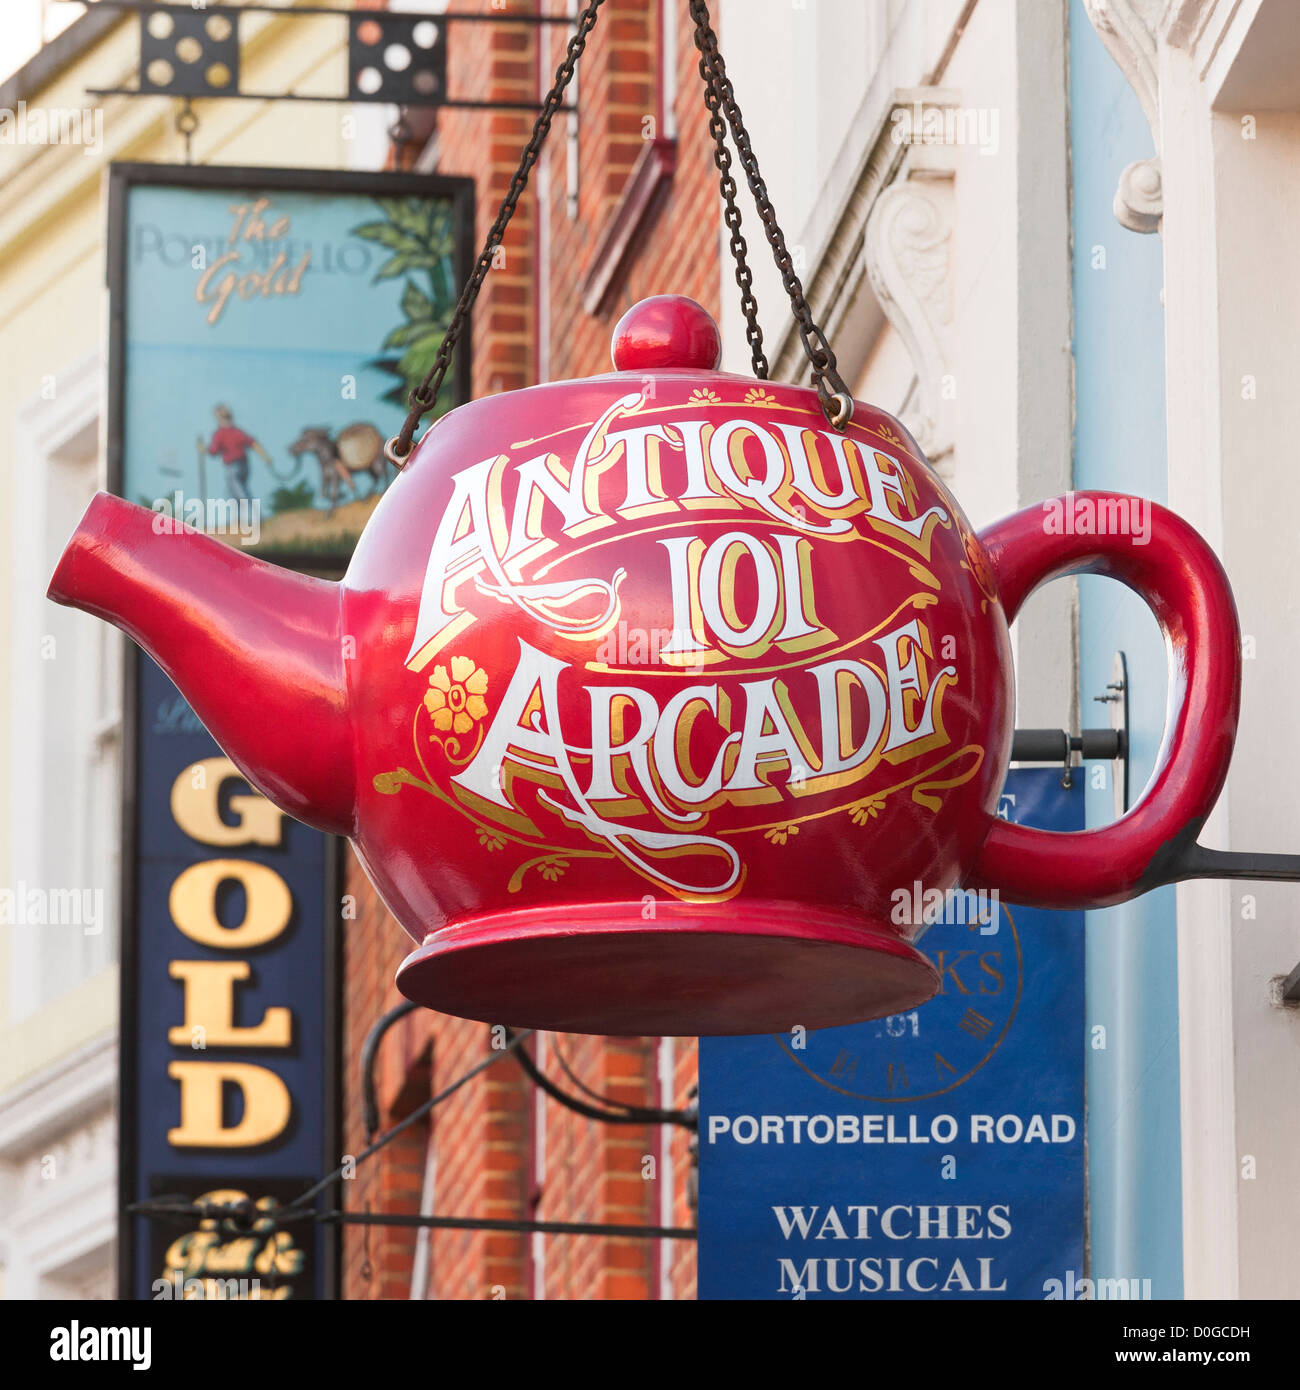 Portobello Road, London Notting Hill. Große rote Teekanne Ladenschild für Antiquitäten Mall der antiken 101 Arcade auf Portobello Road. Stockfoto